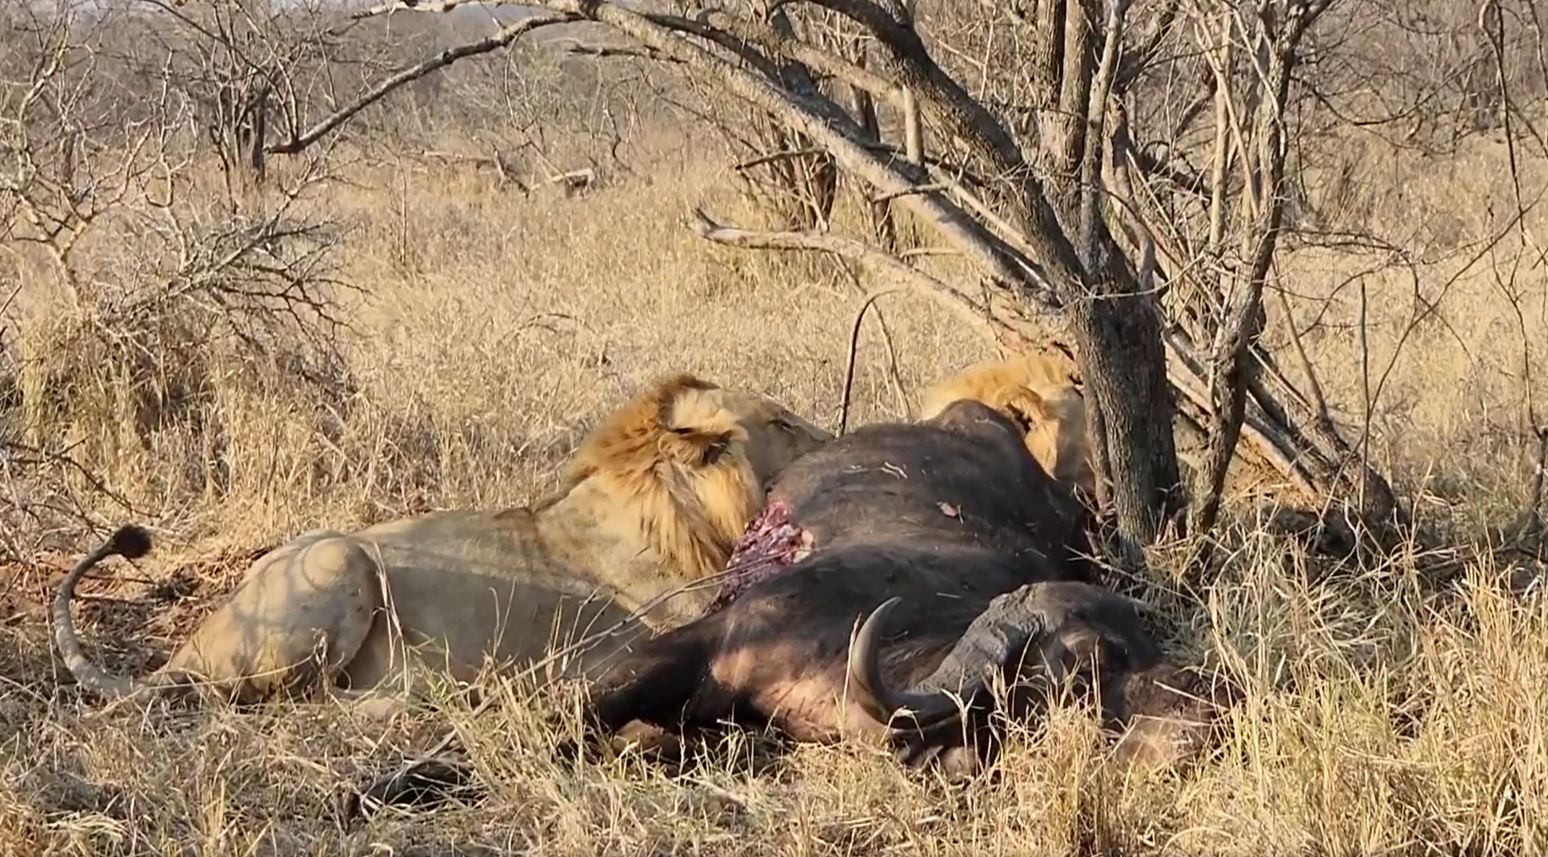 Fotoreise durch die Wildnis Südafrikas. Es ist sehr ungewöhnlich, dass 7 männliche Löwen zusammen unterwegs sind.